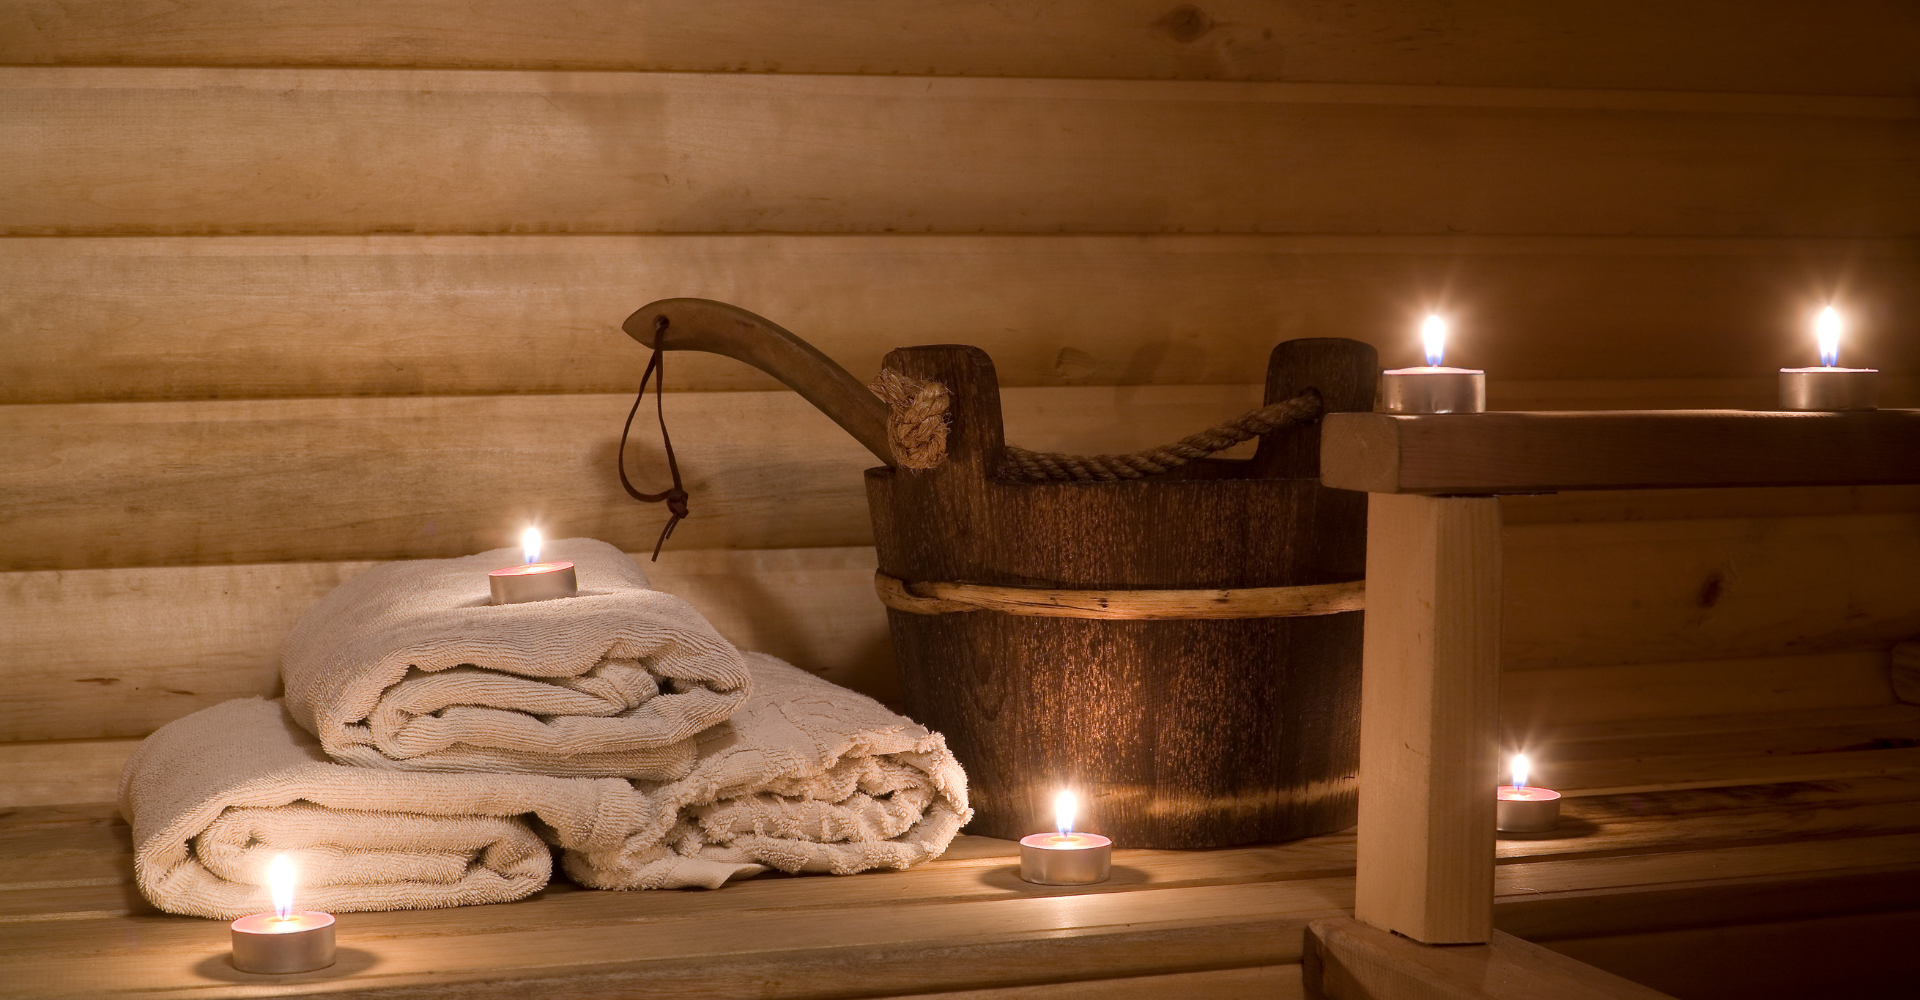 Sauna Routine to Improve Sleep